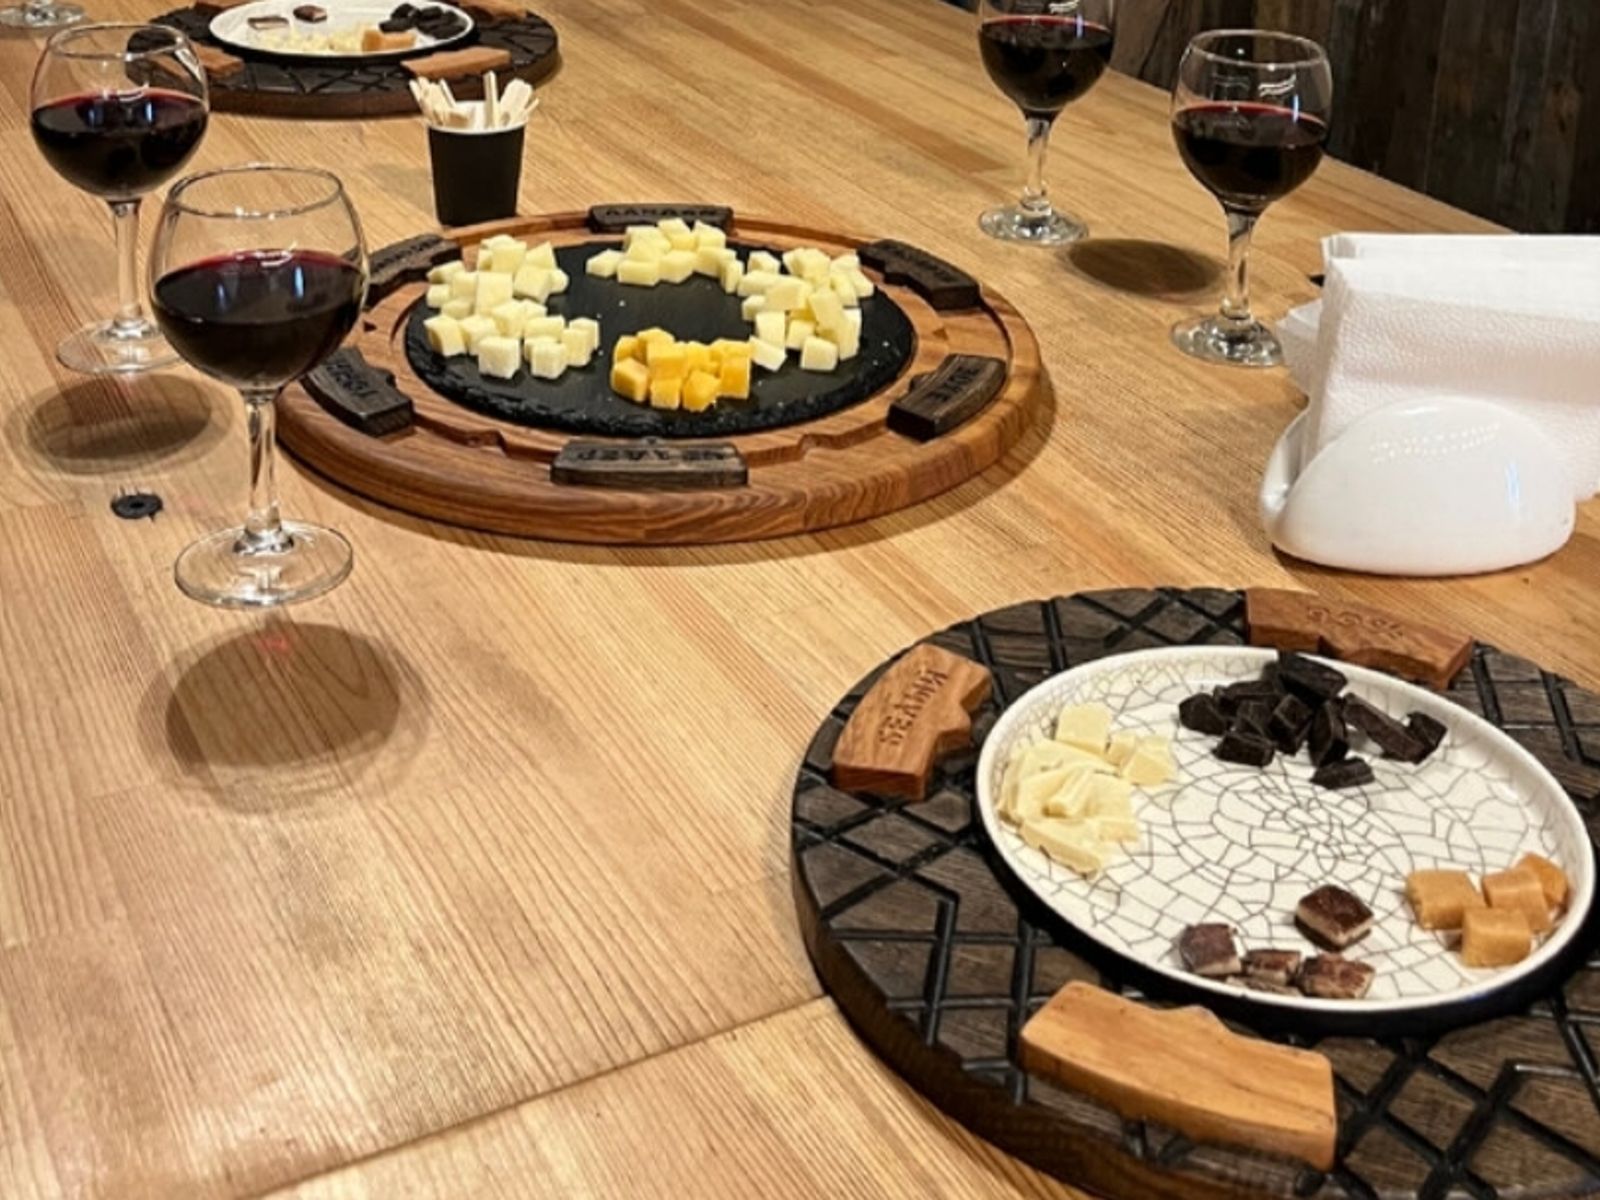 Дегустация пяти видов сыров, марципана и шоколада